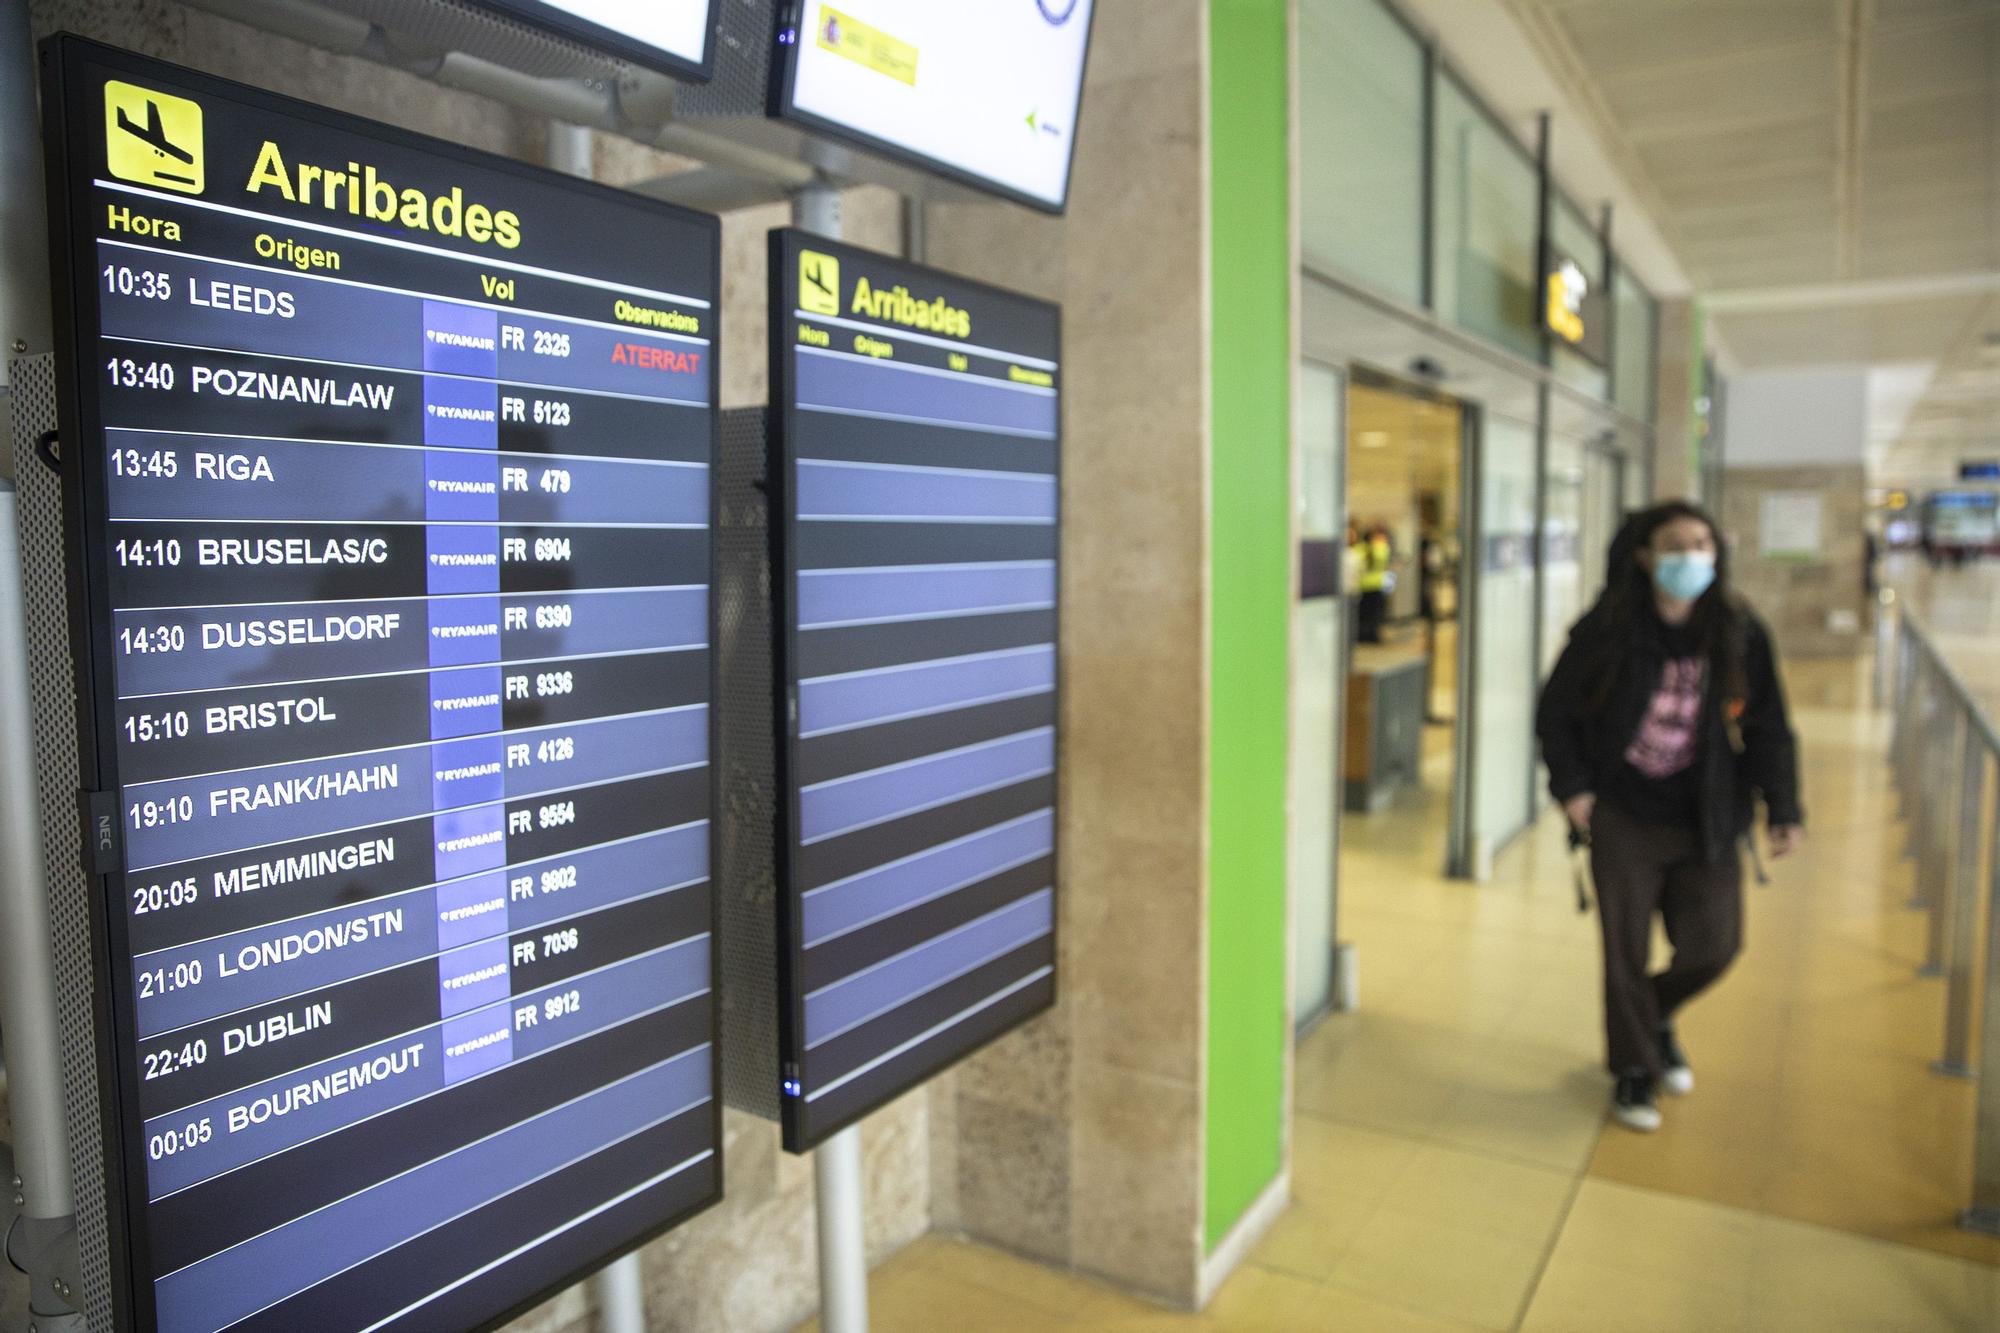 «Volar a Girona és, a part d’econòmic, molt més pràctic»